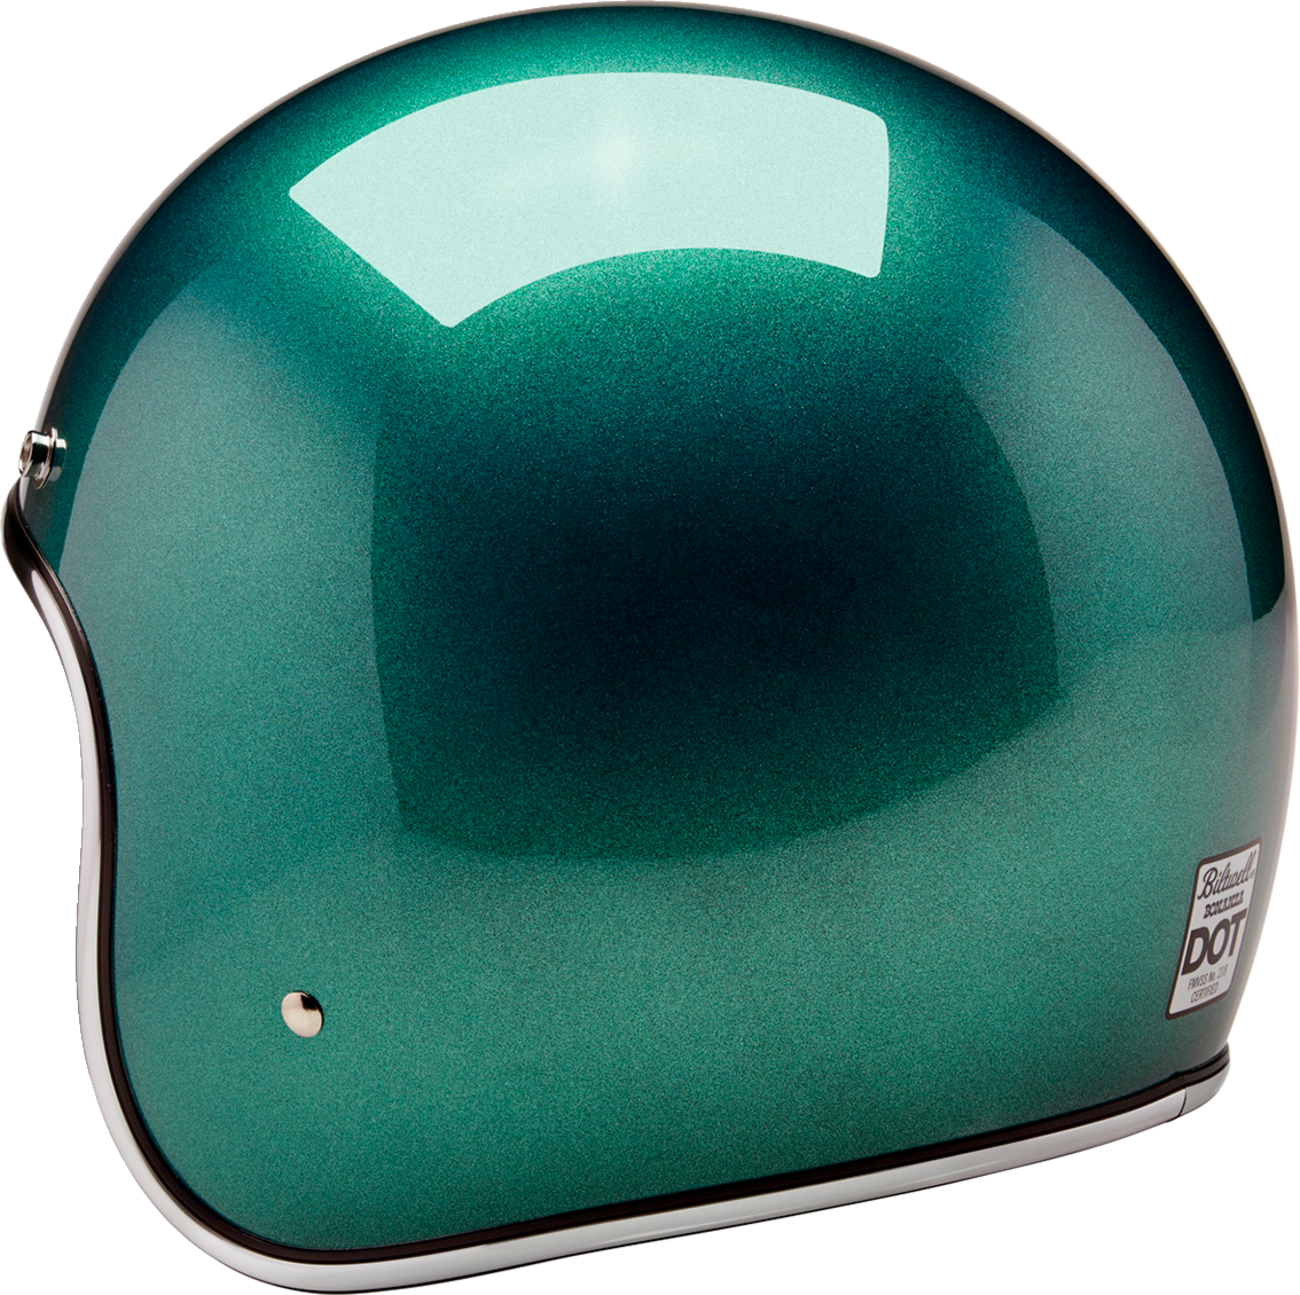 BILTWELL Bonanza Helmet - Metallic Catalina Green - 2XL 1001-358-206